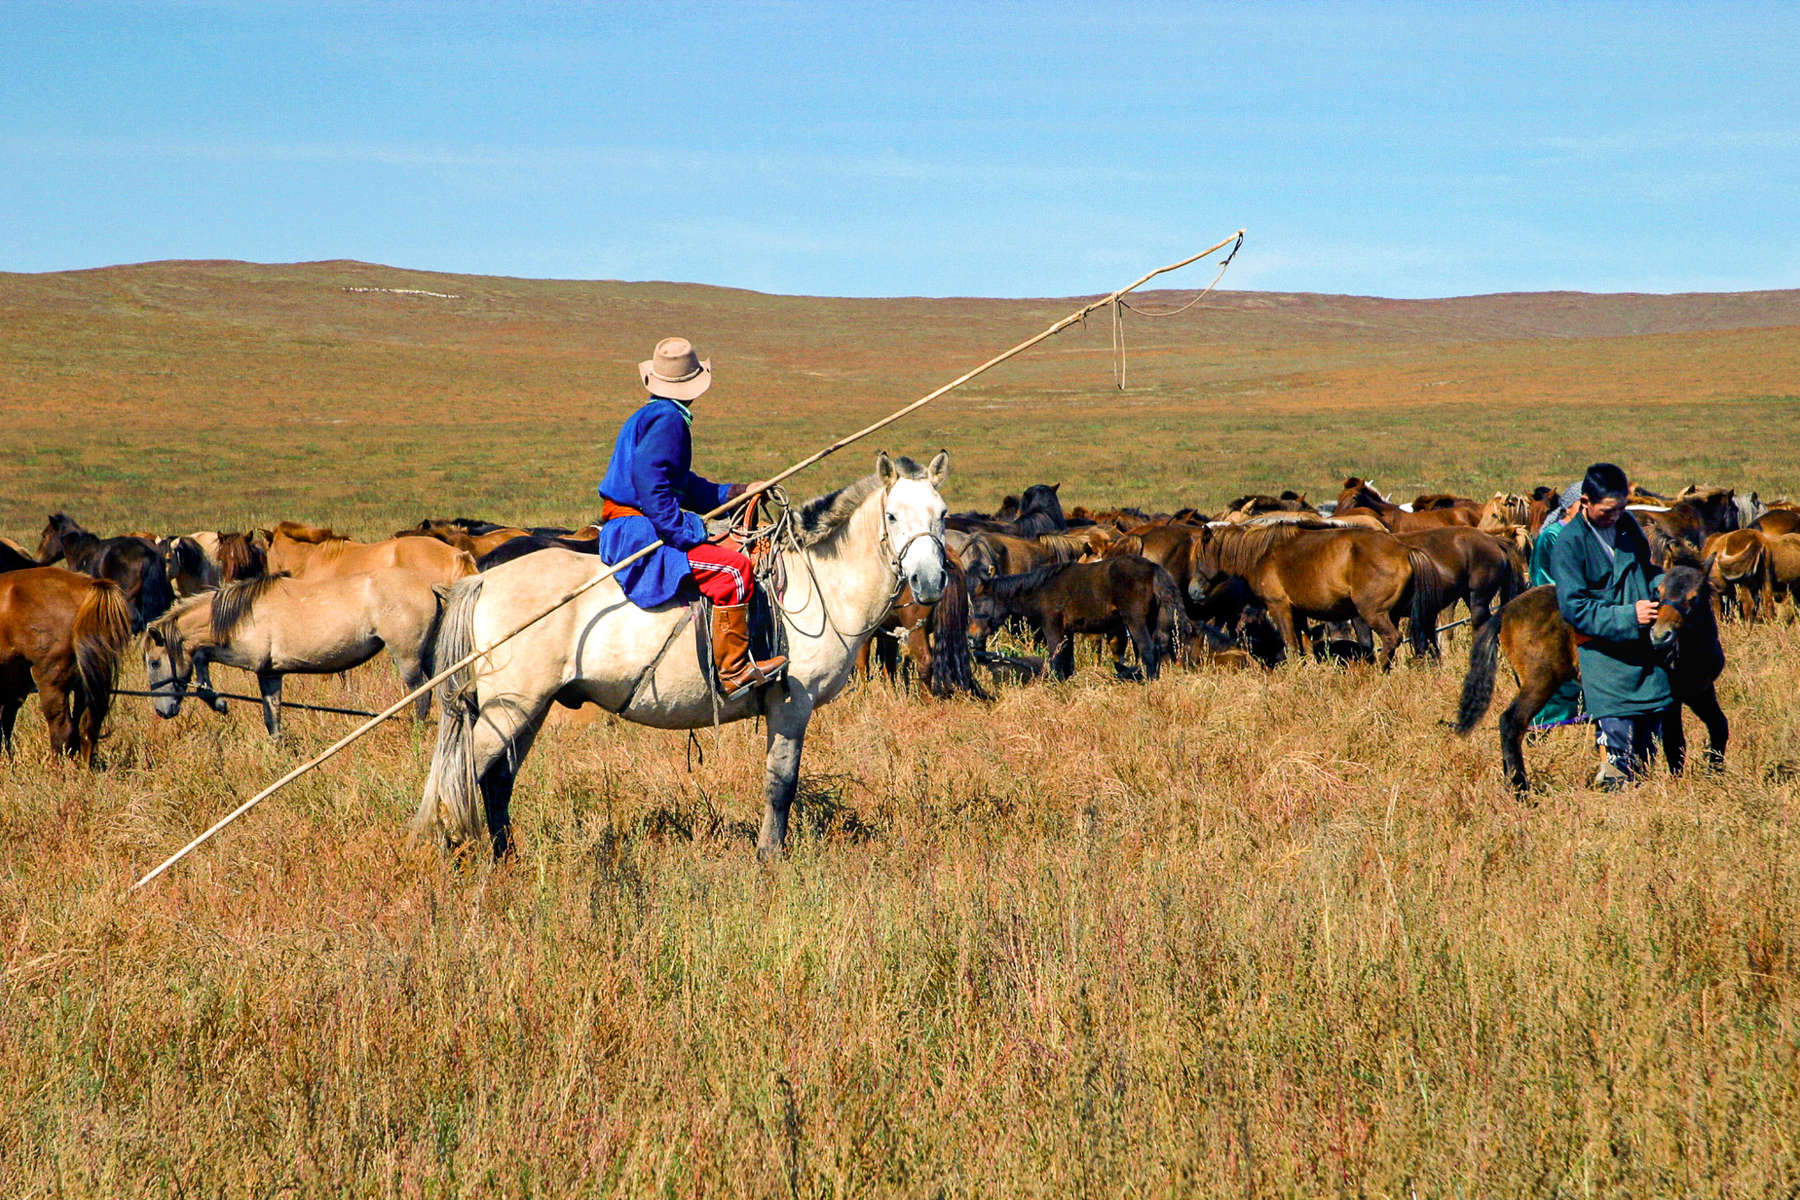 Gardien et son troupeau de chevaux en Mongolie